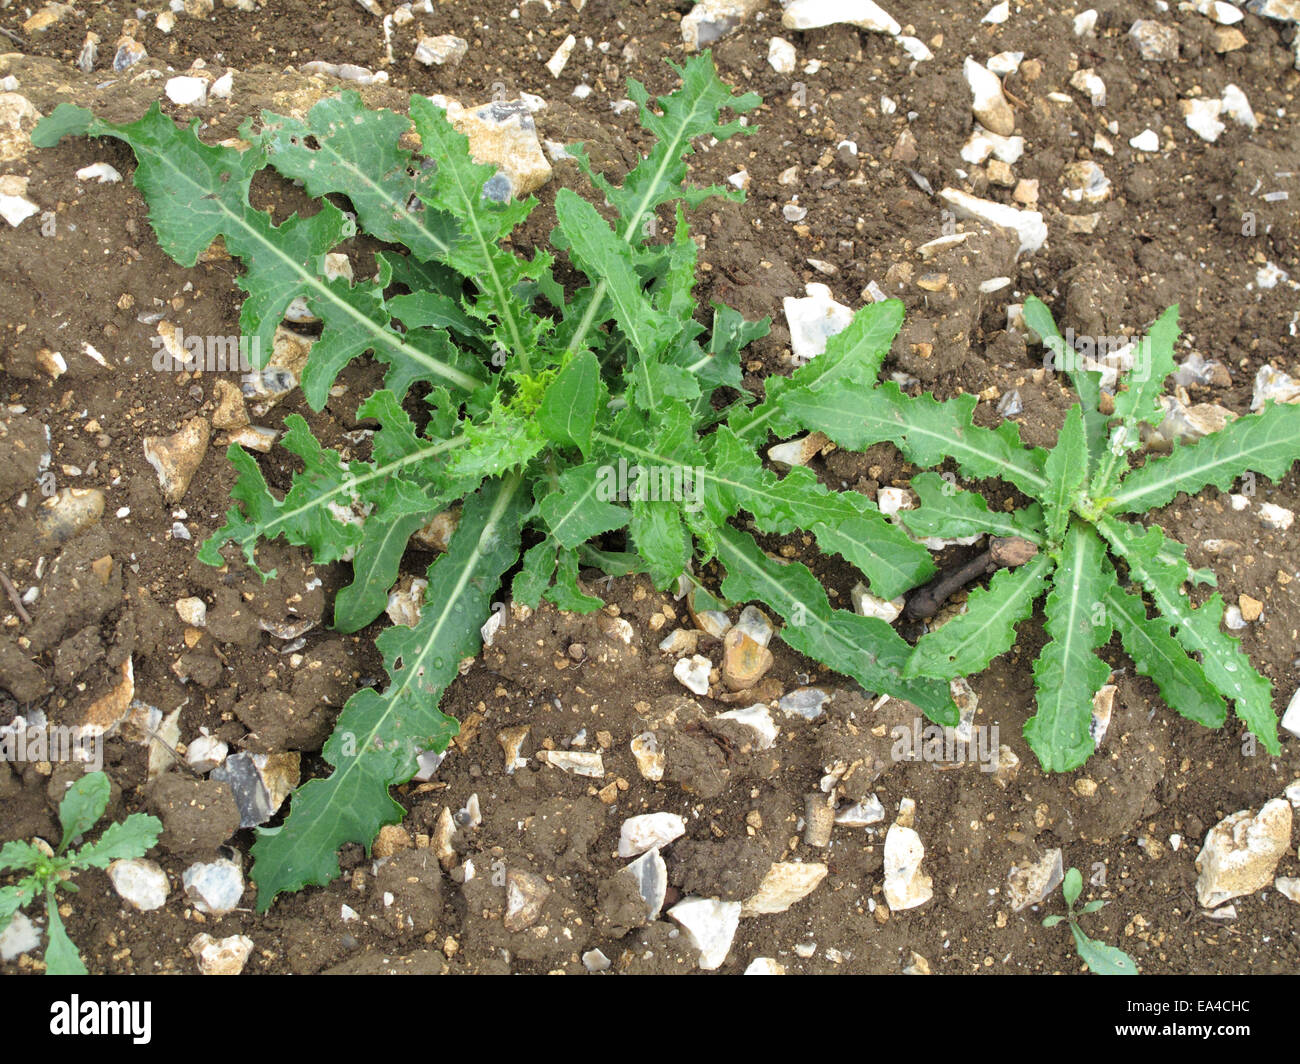 Junge niederwerfen mehrjährige Sau-Distel, Sonchus Arvensis Pflanzen auf Abfall Araqble Boden Stockfoto